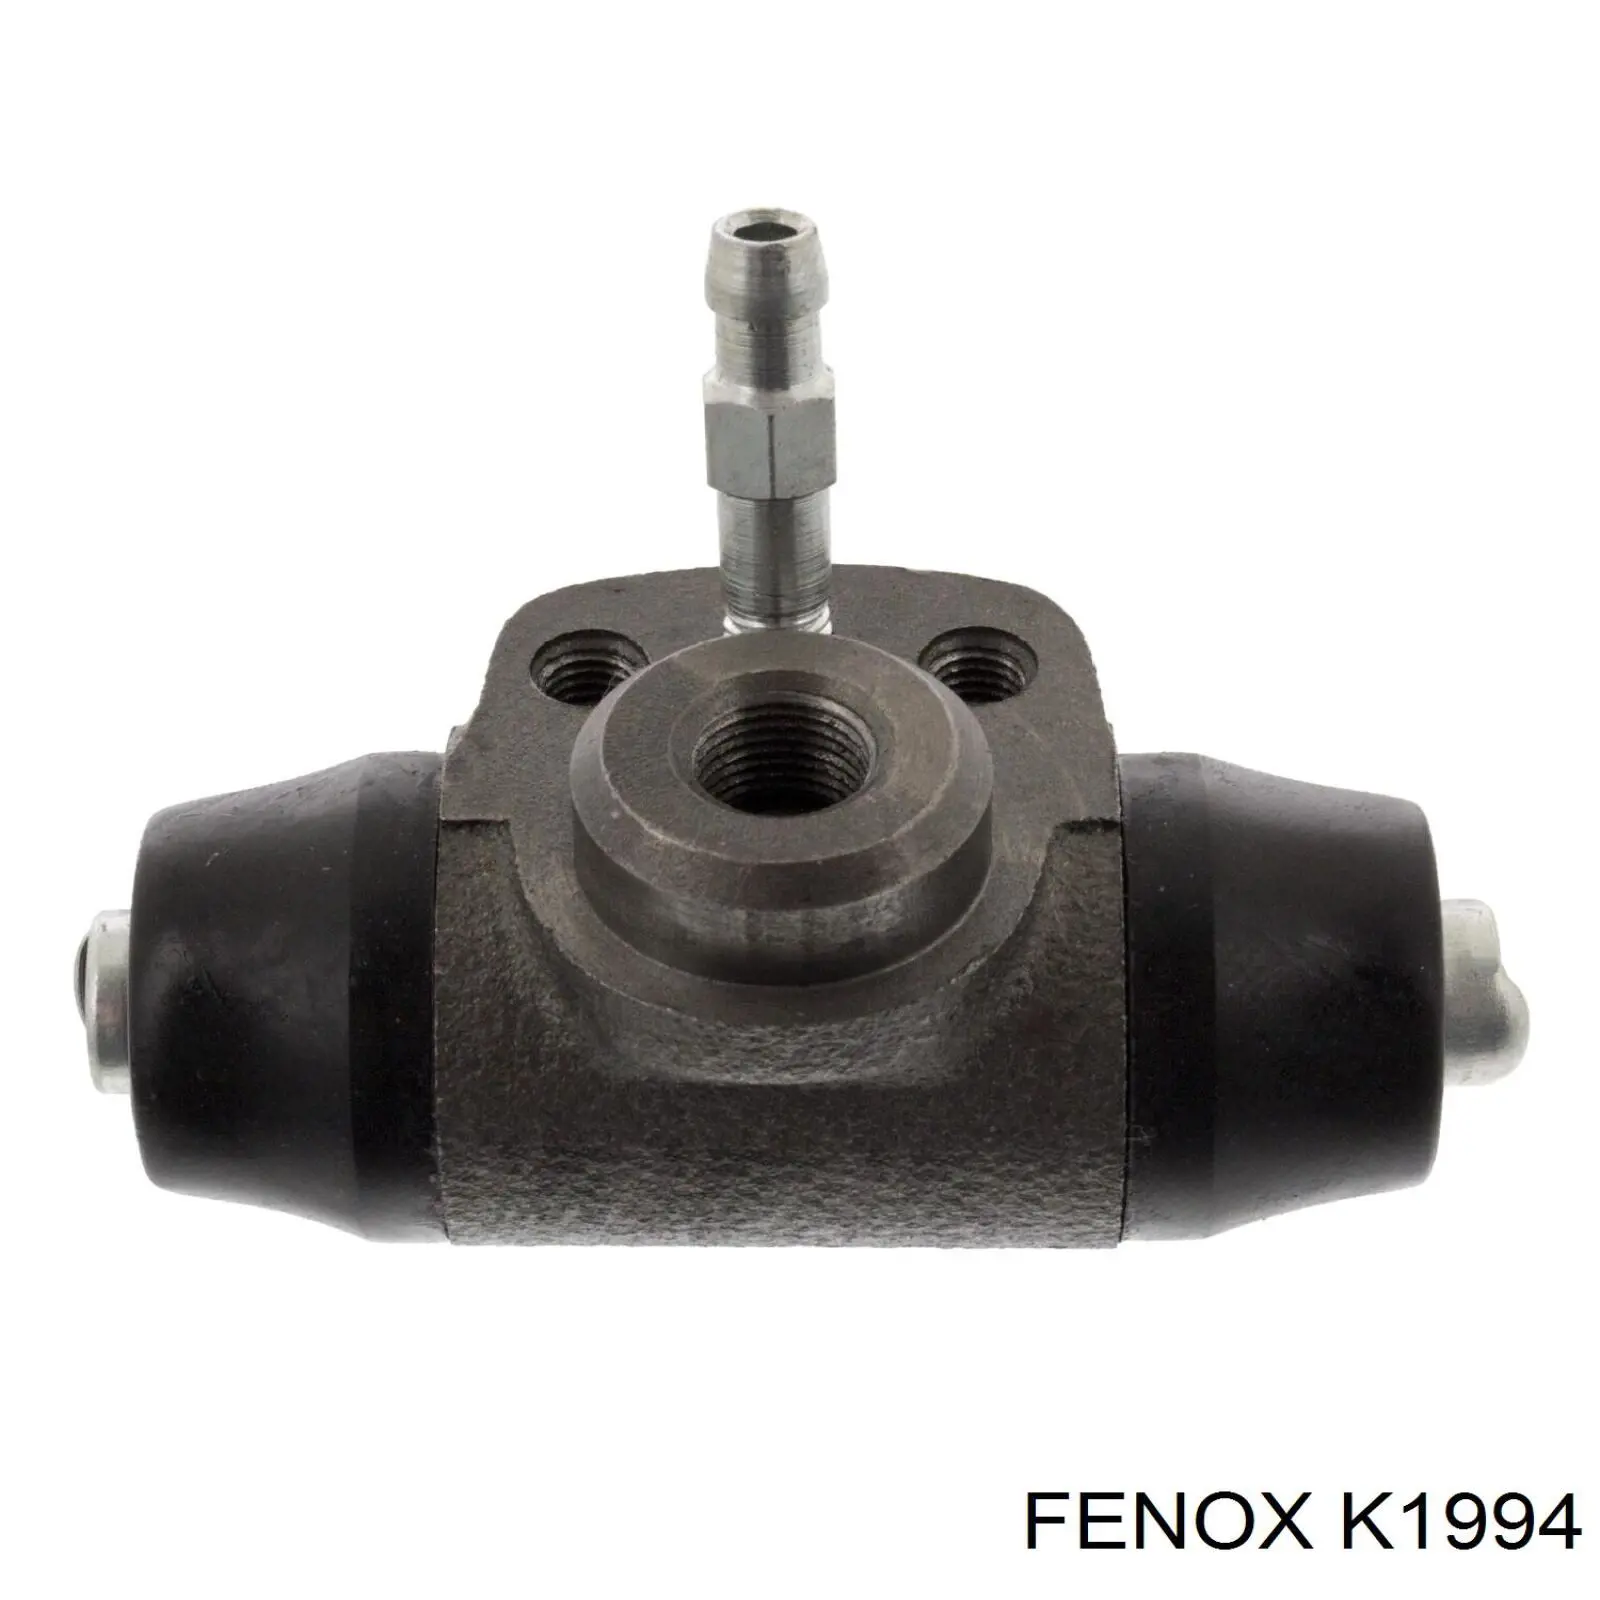 K1994 Fenox цилиндр тормозной колесный рабочий задний